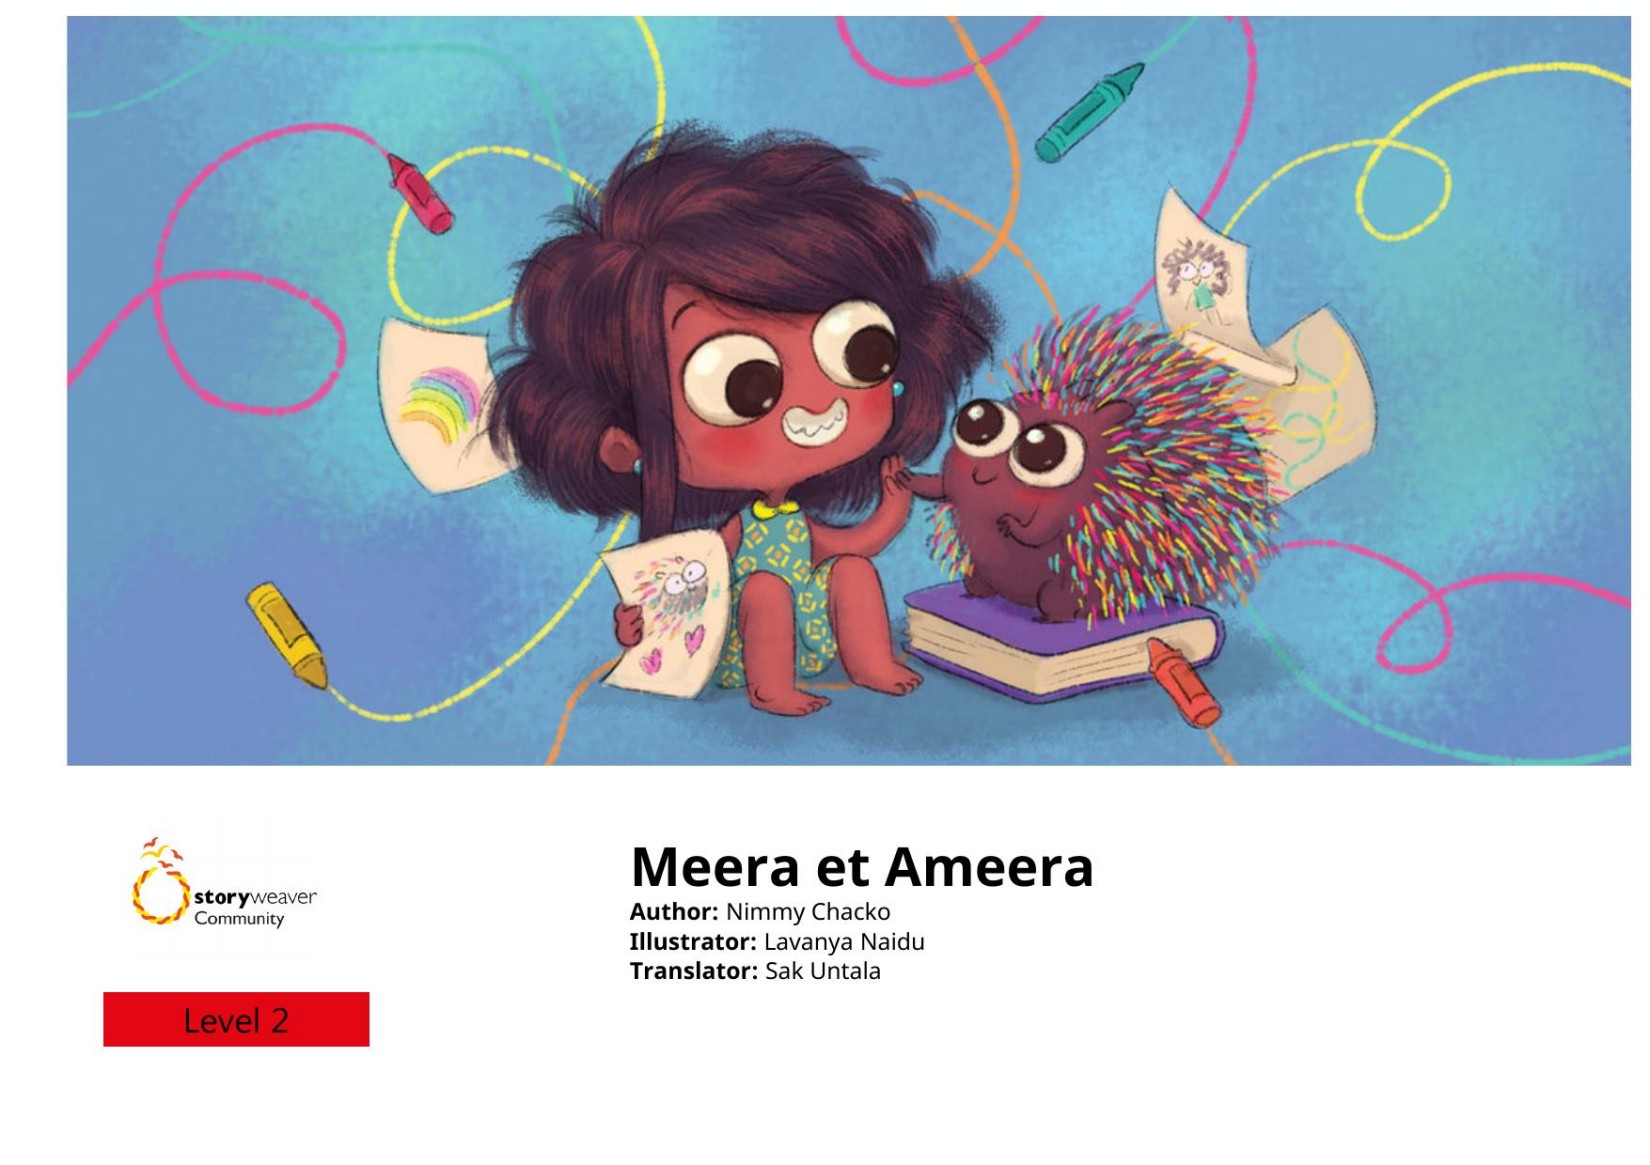 Meera et Ameera